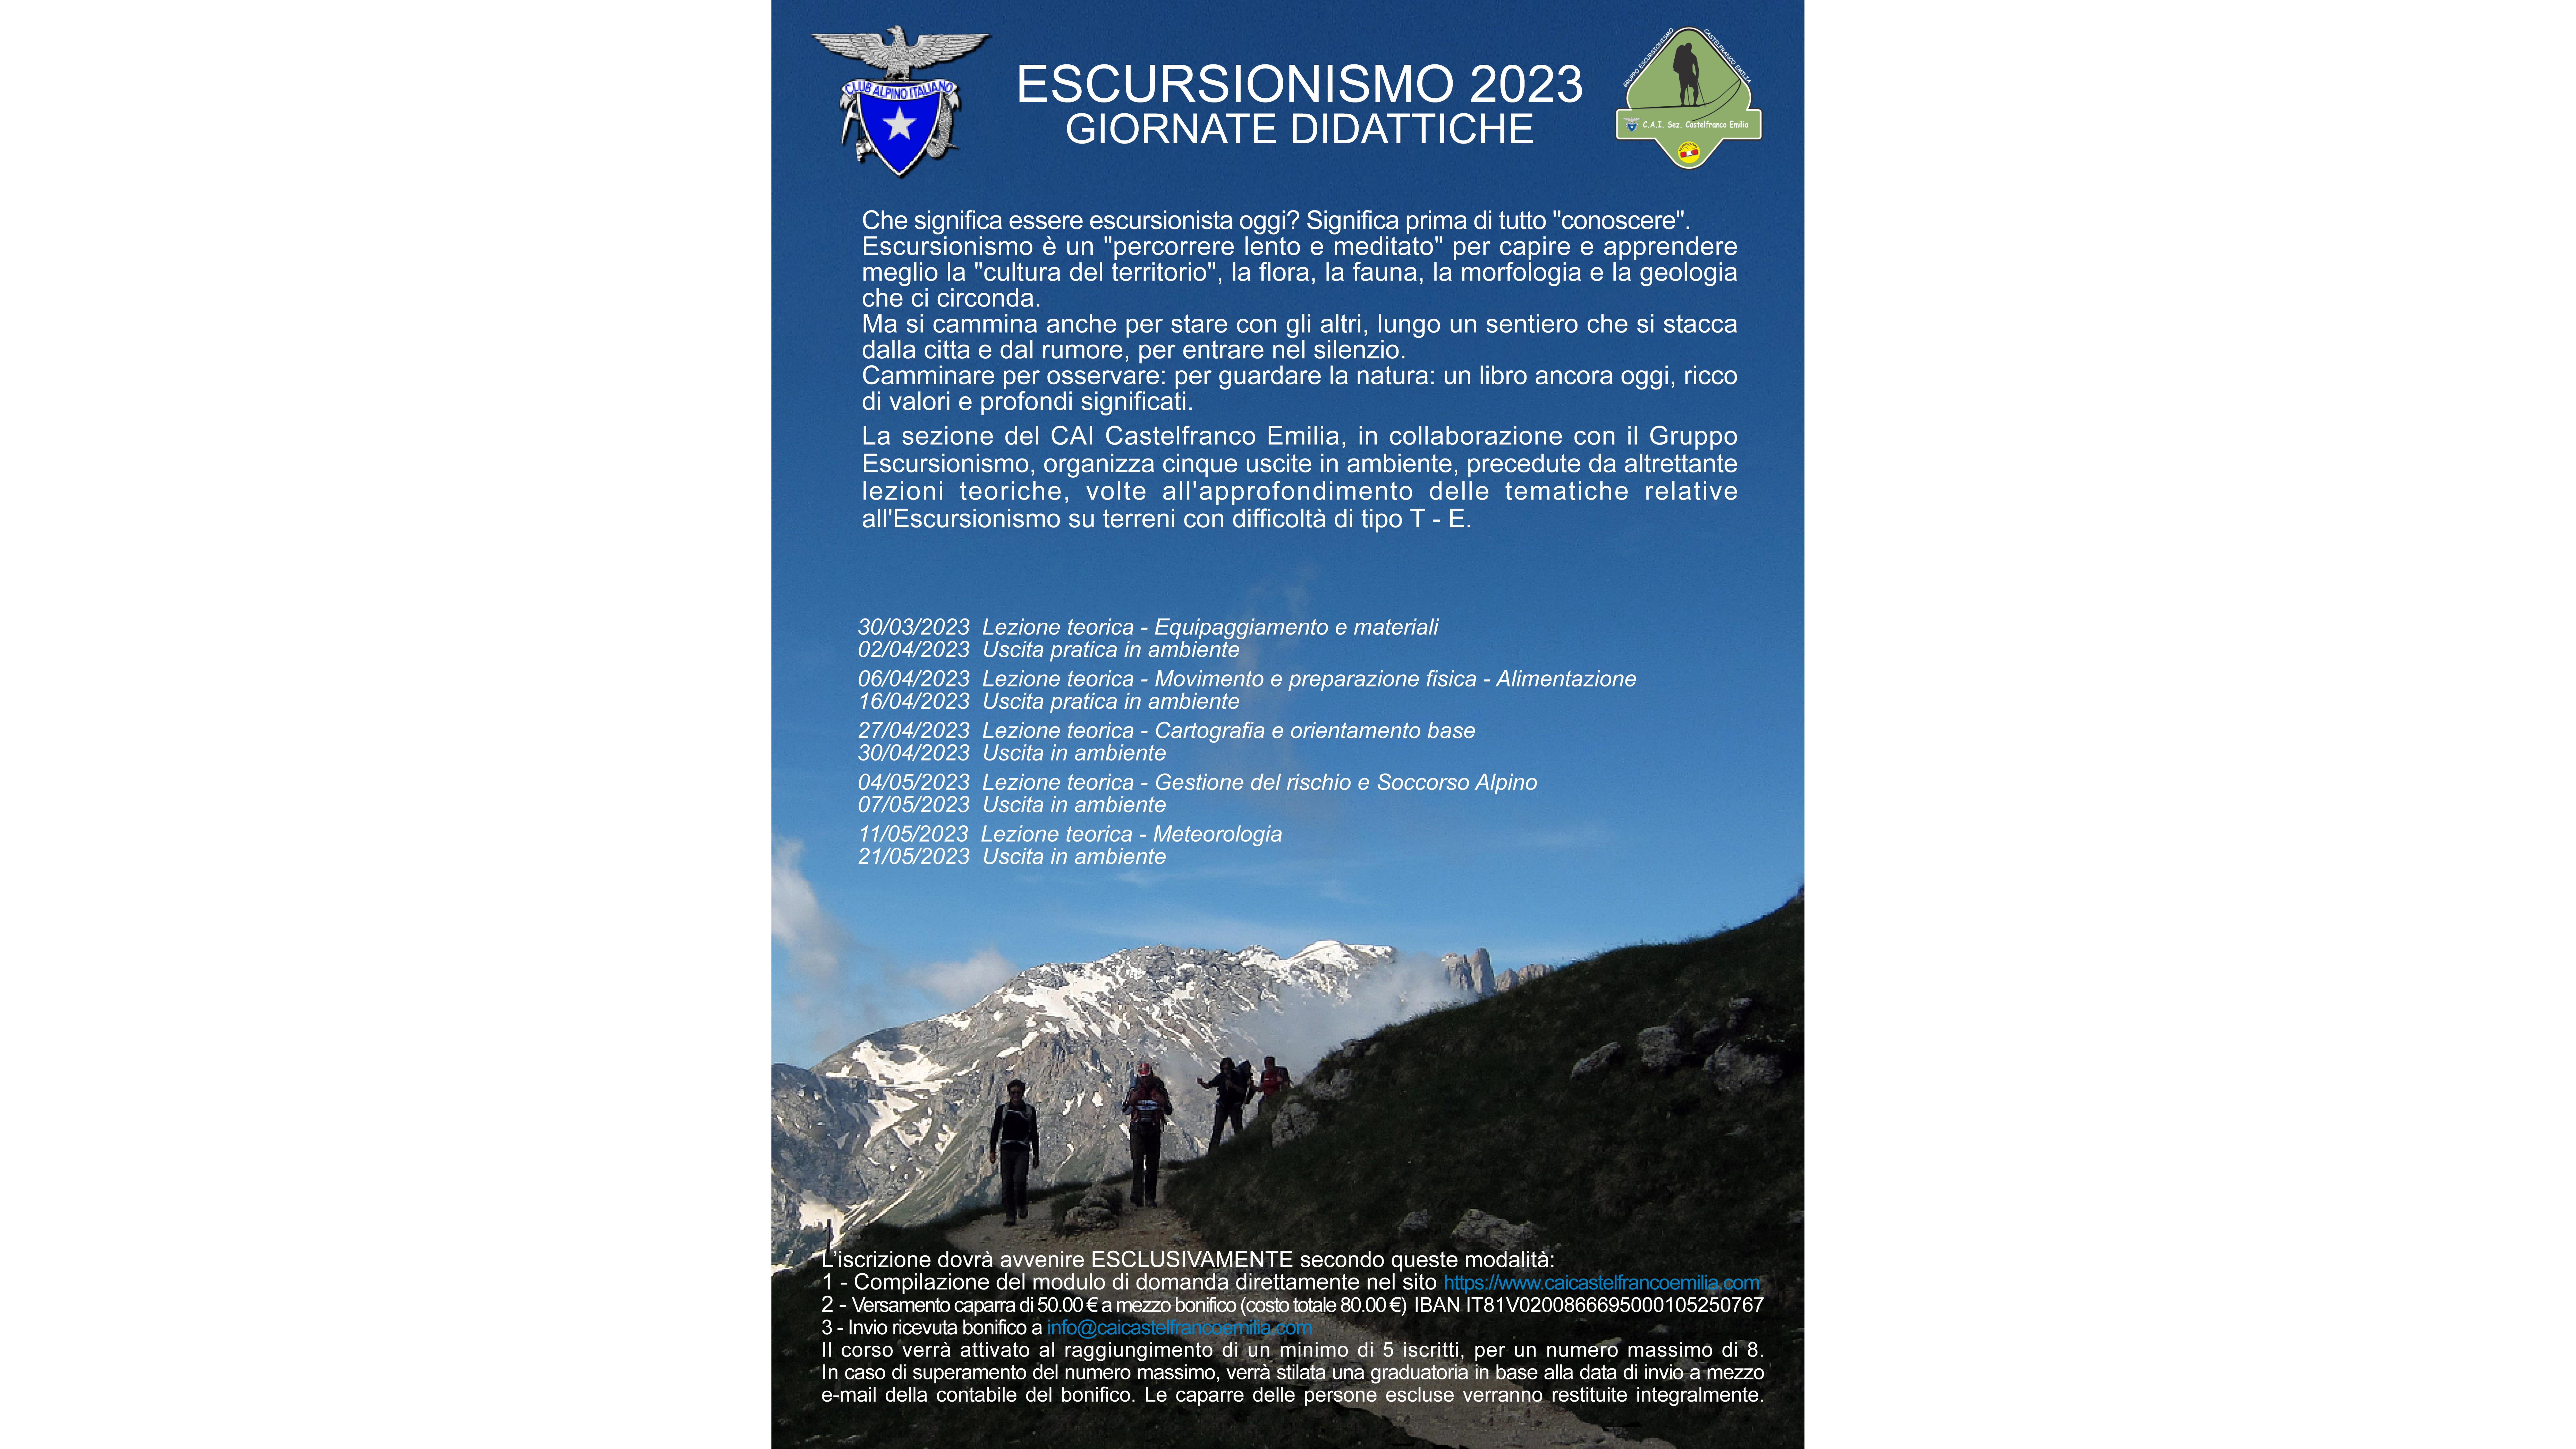 Giornate Didattiche – Escursionismo 2023